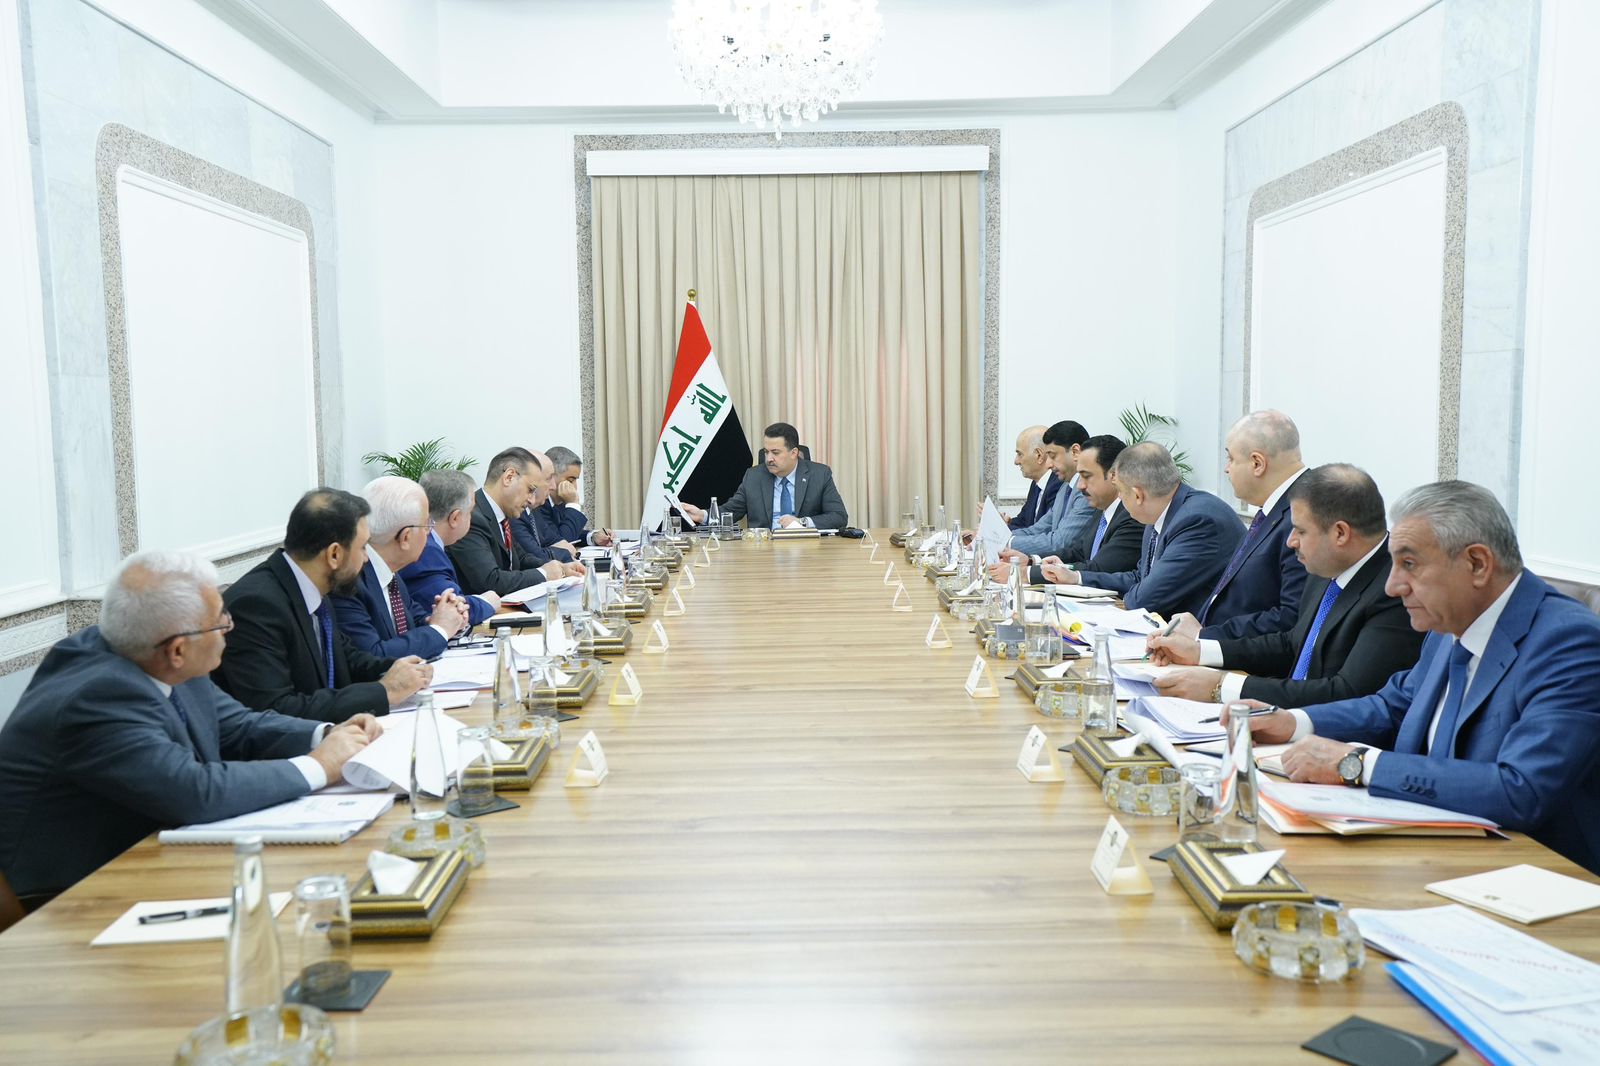 توصية لمجلس الوزراء العراقي بحل مشاكل المياه والفيضانات في إقليم كوردستان